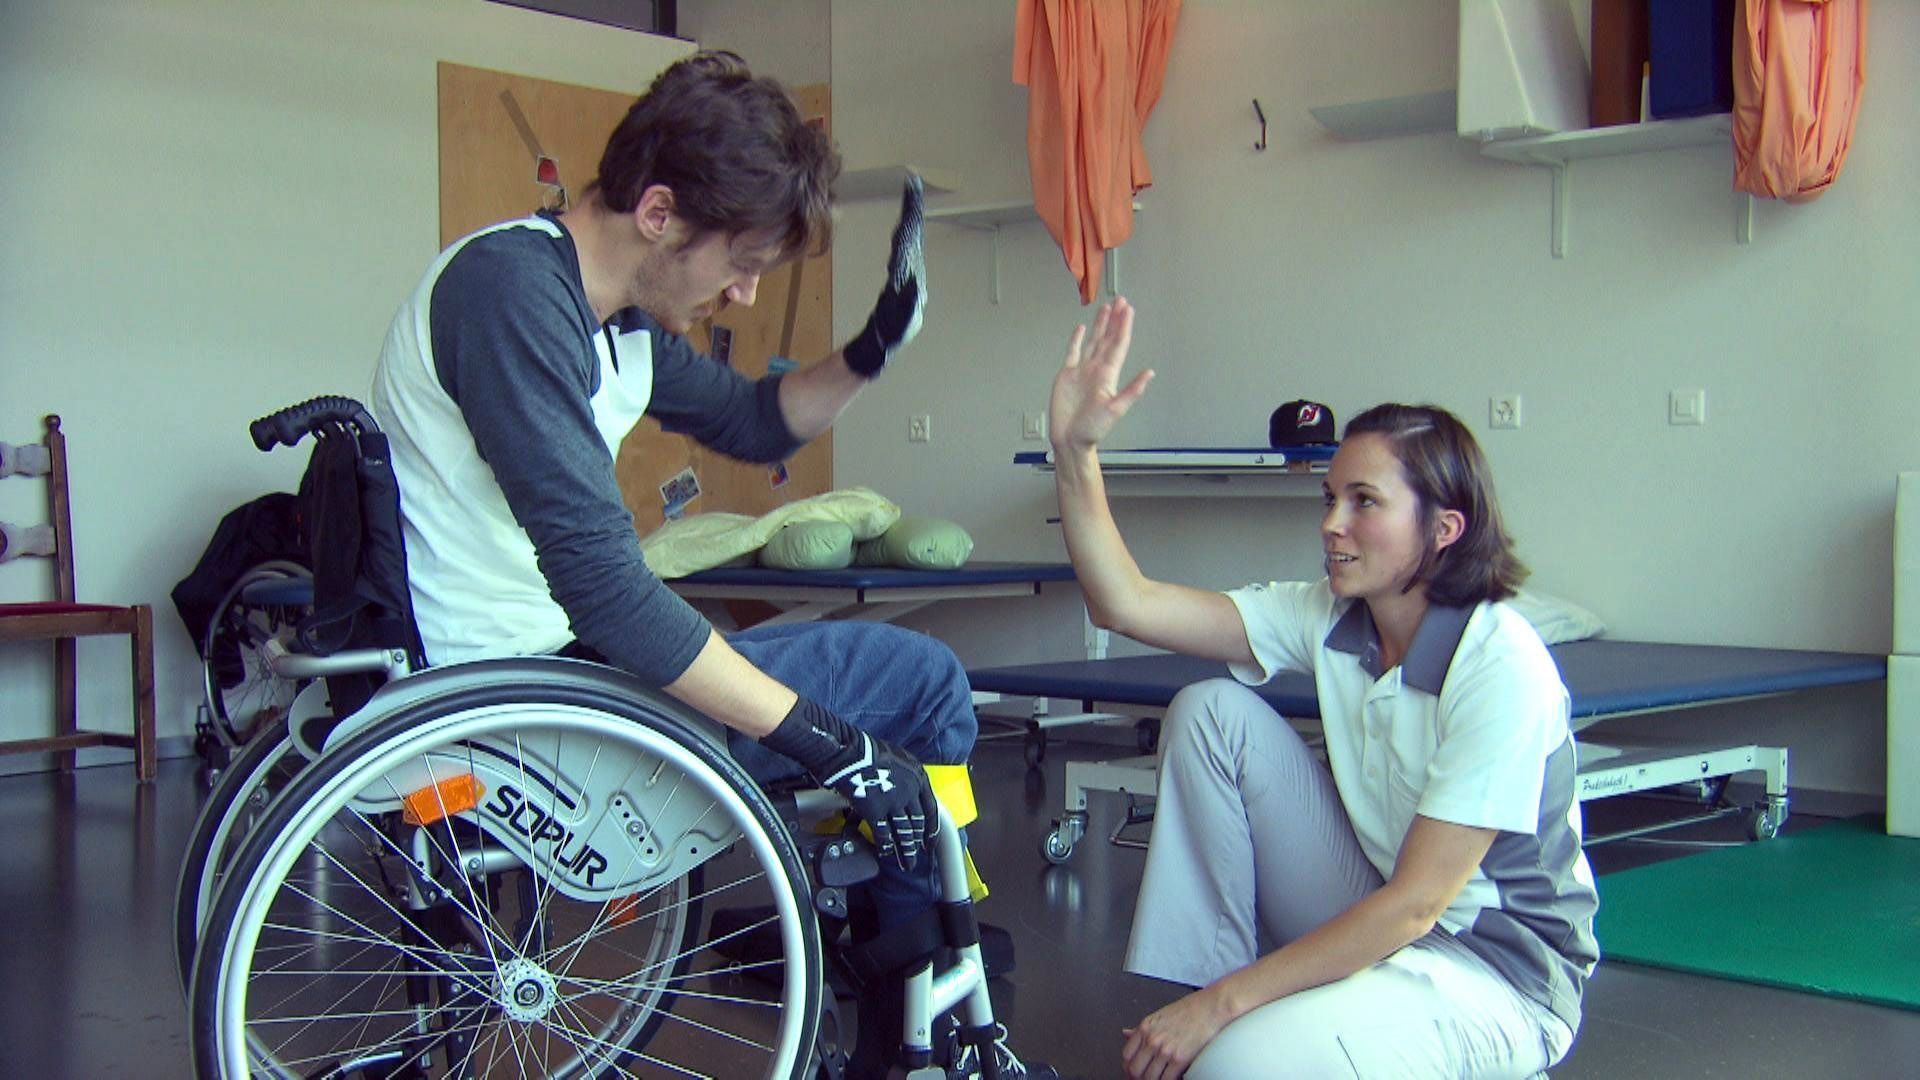 Extrait du documentaire "Jeunes et paraplégiques". Bastien, qui vient de s’asseoir seul dans sa chaise roulante, fait un high five à l’infirmière.